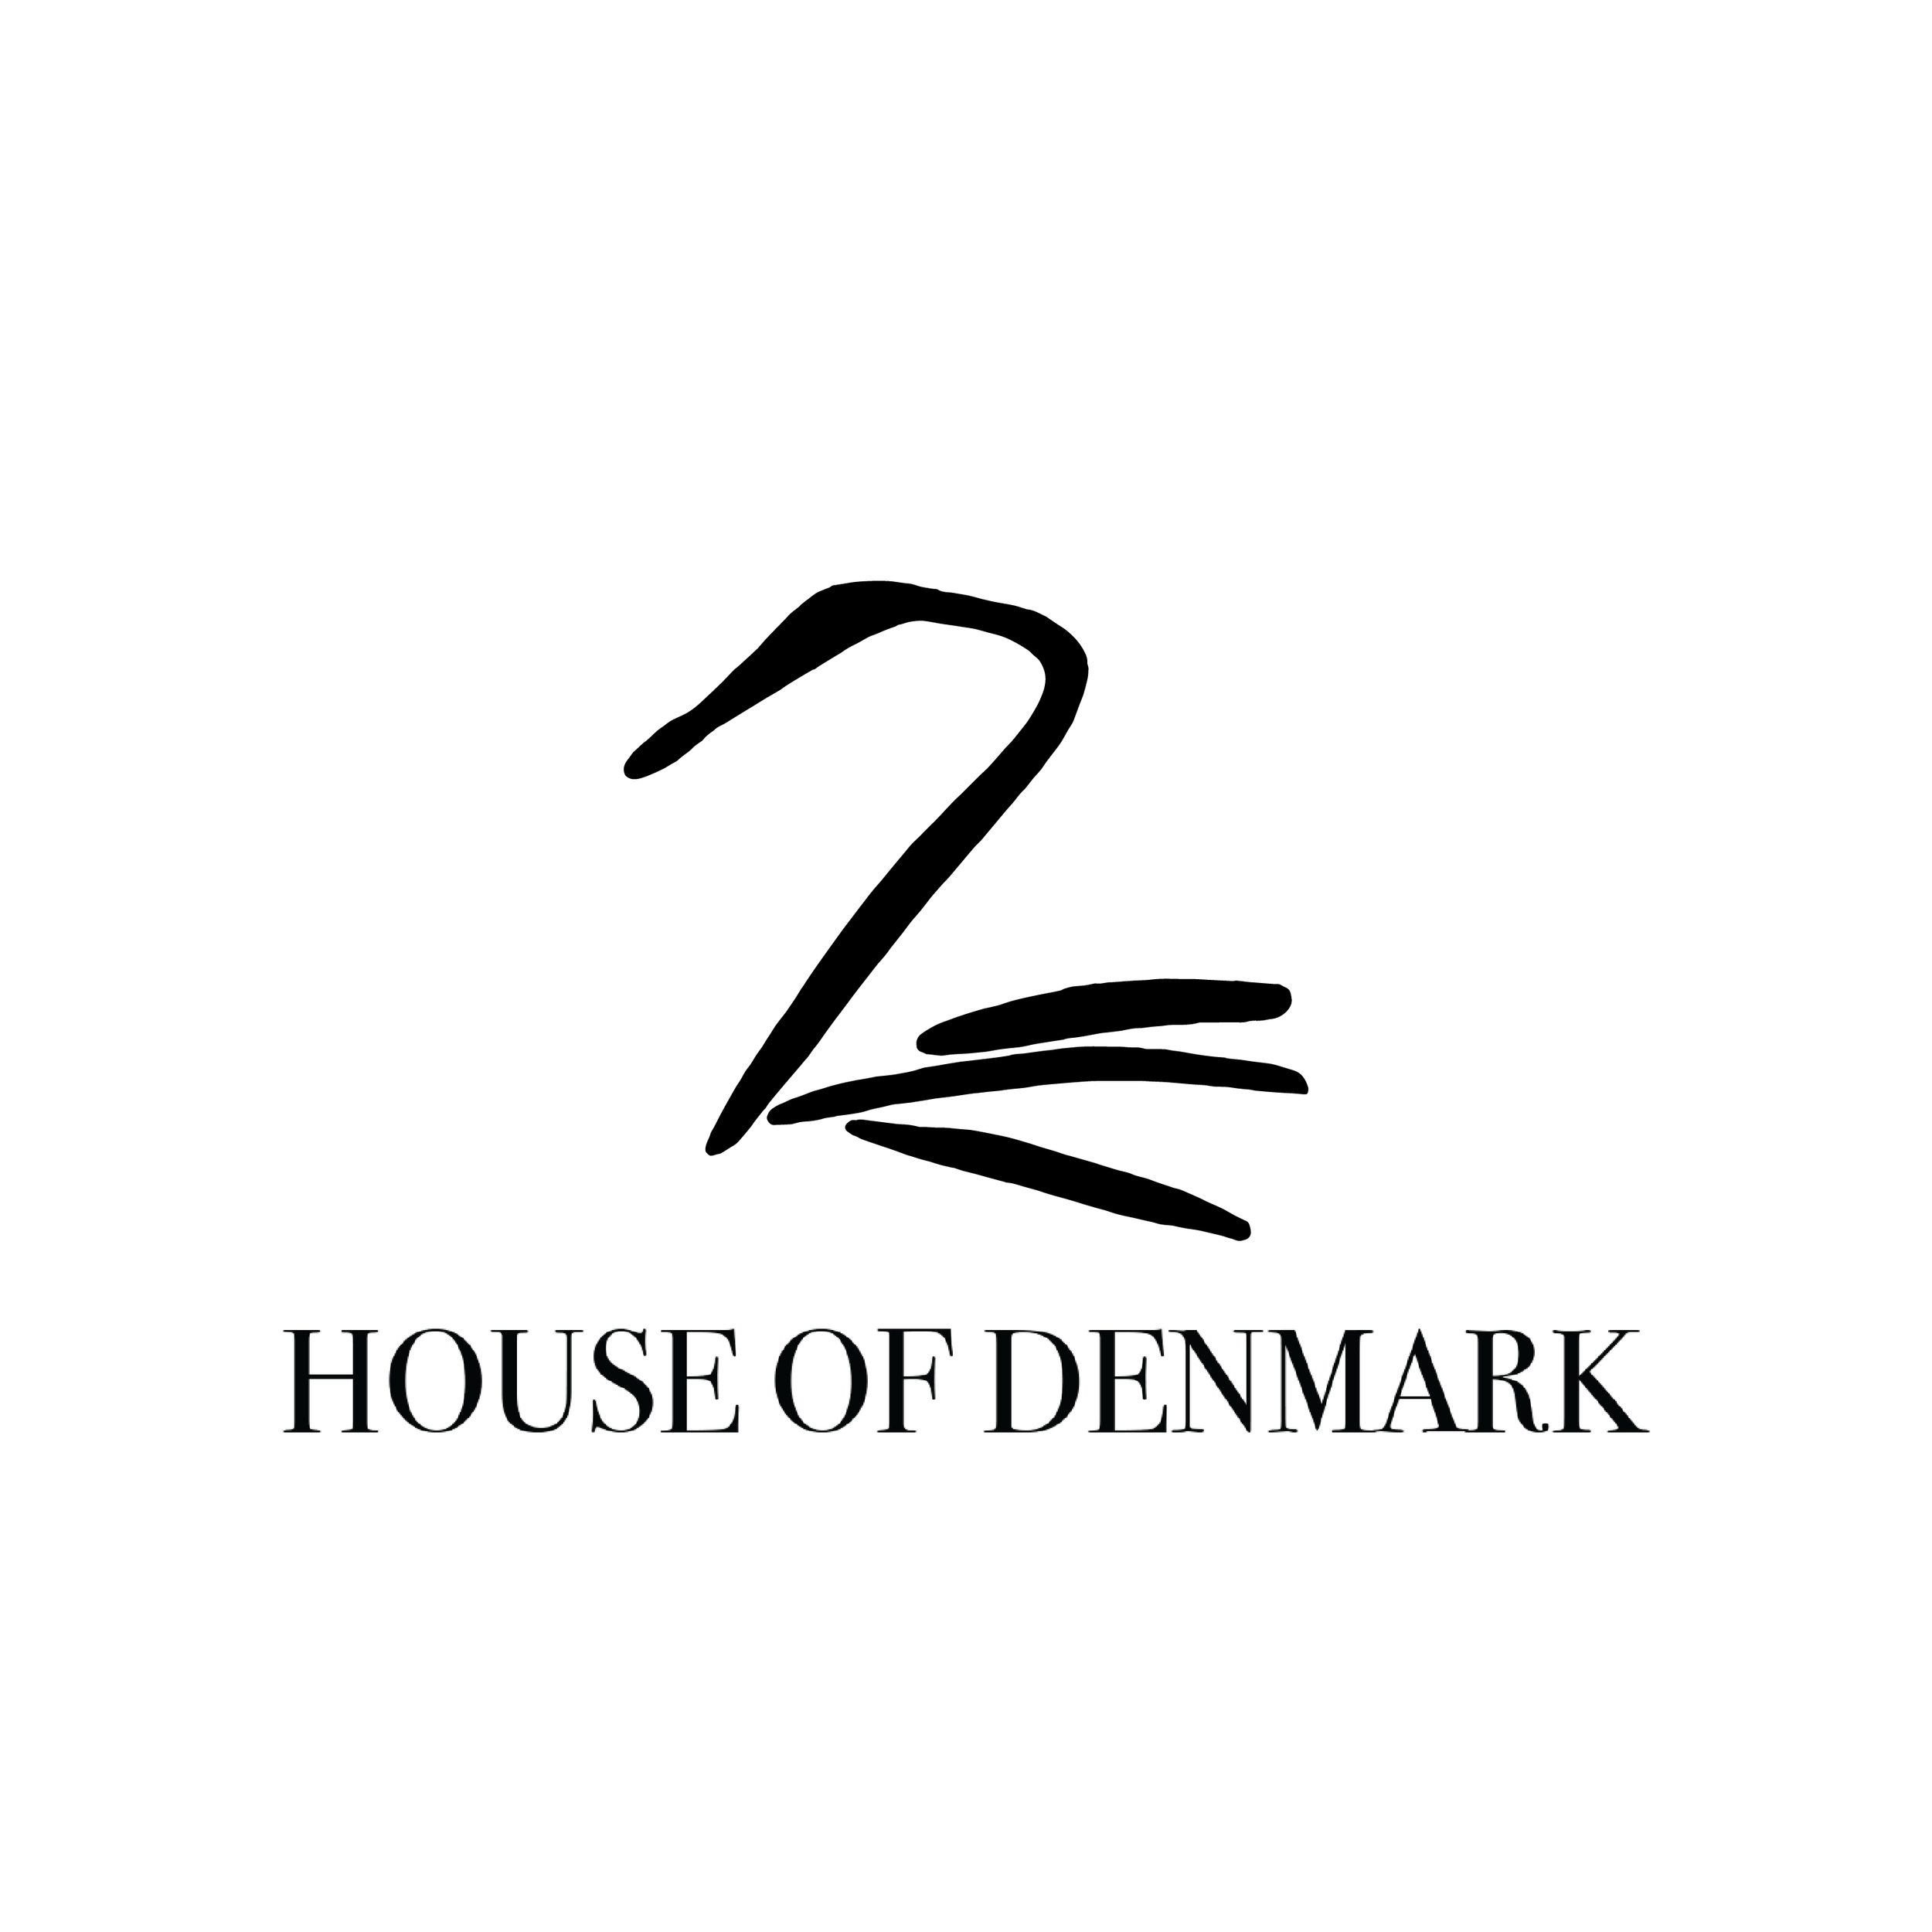 House of Denmark: Innovative Furniture